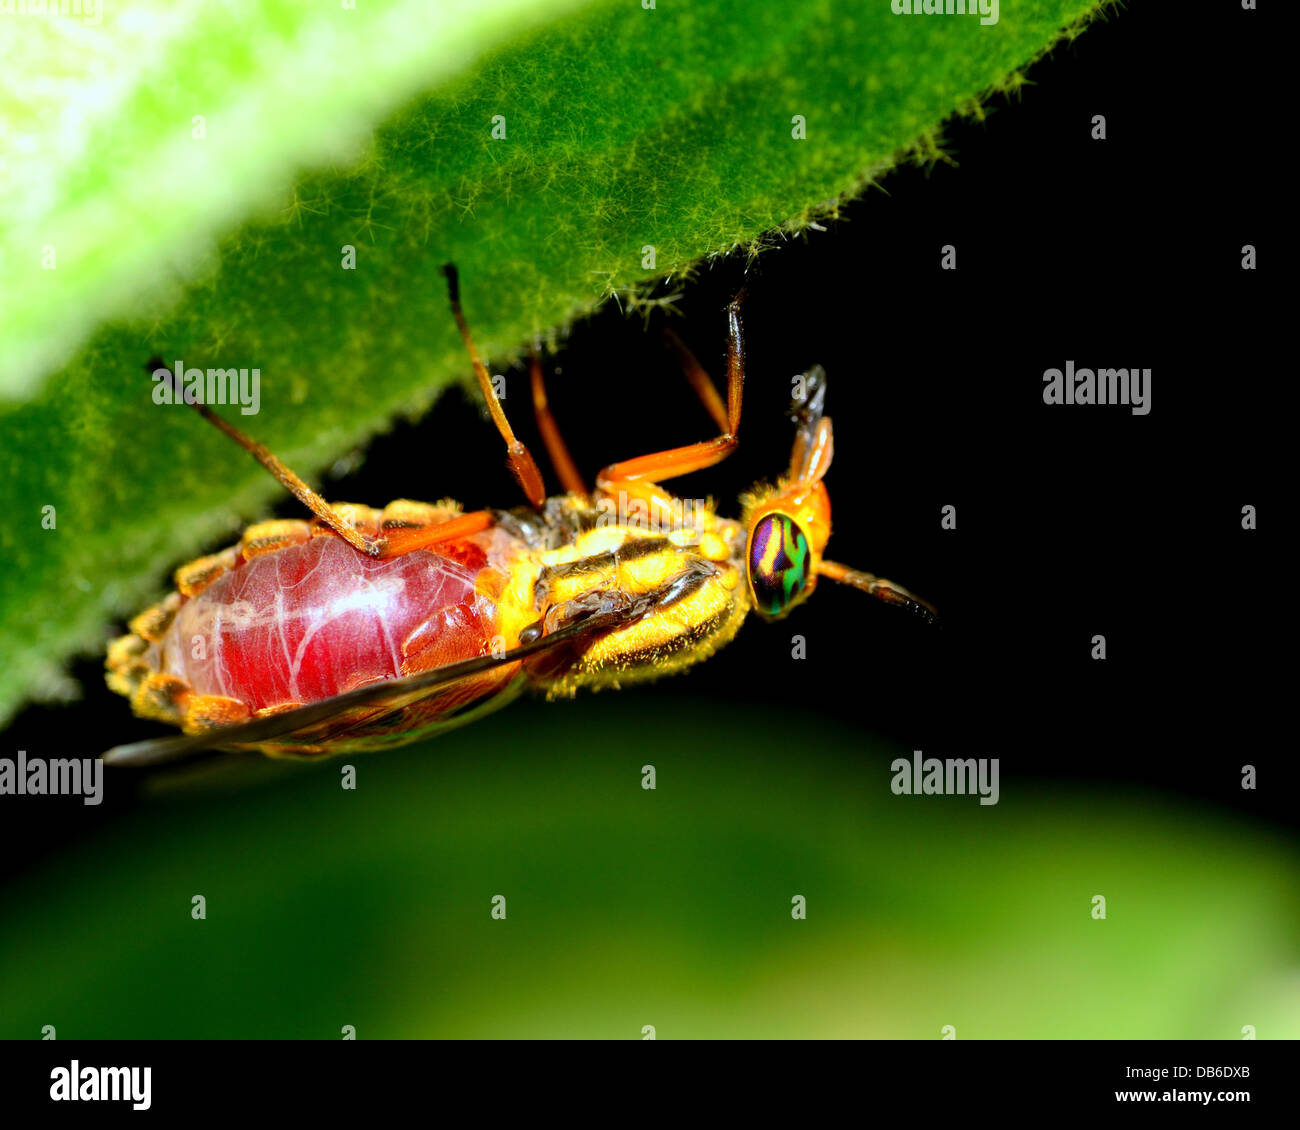 Ein Hirsch-Fly engorged mit Blut thront auf einem Pflanzenstängel. Stockfoto